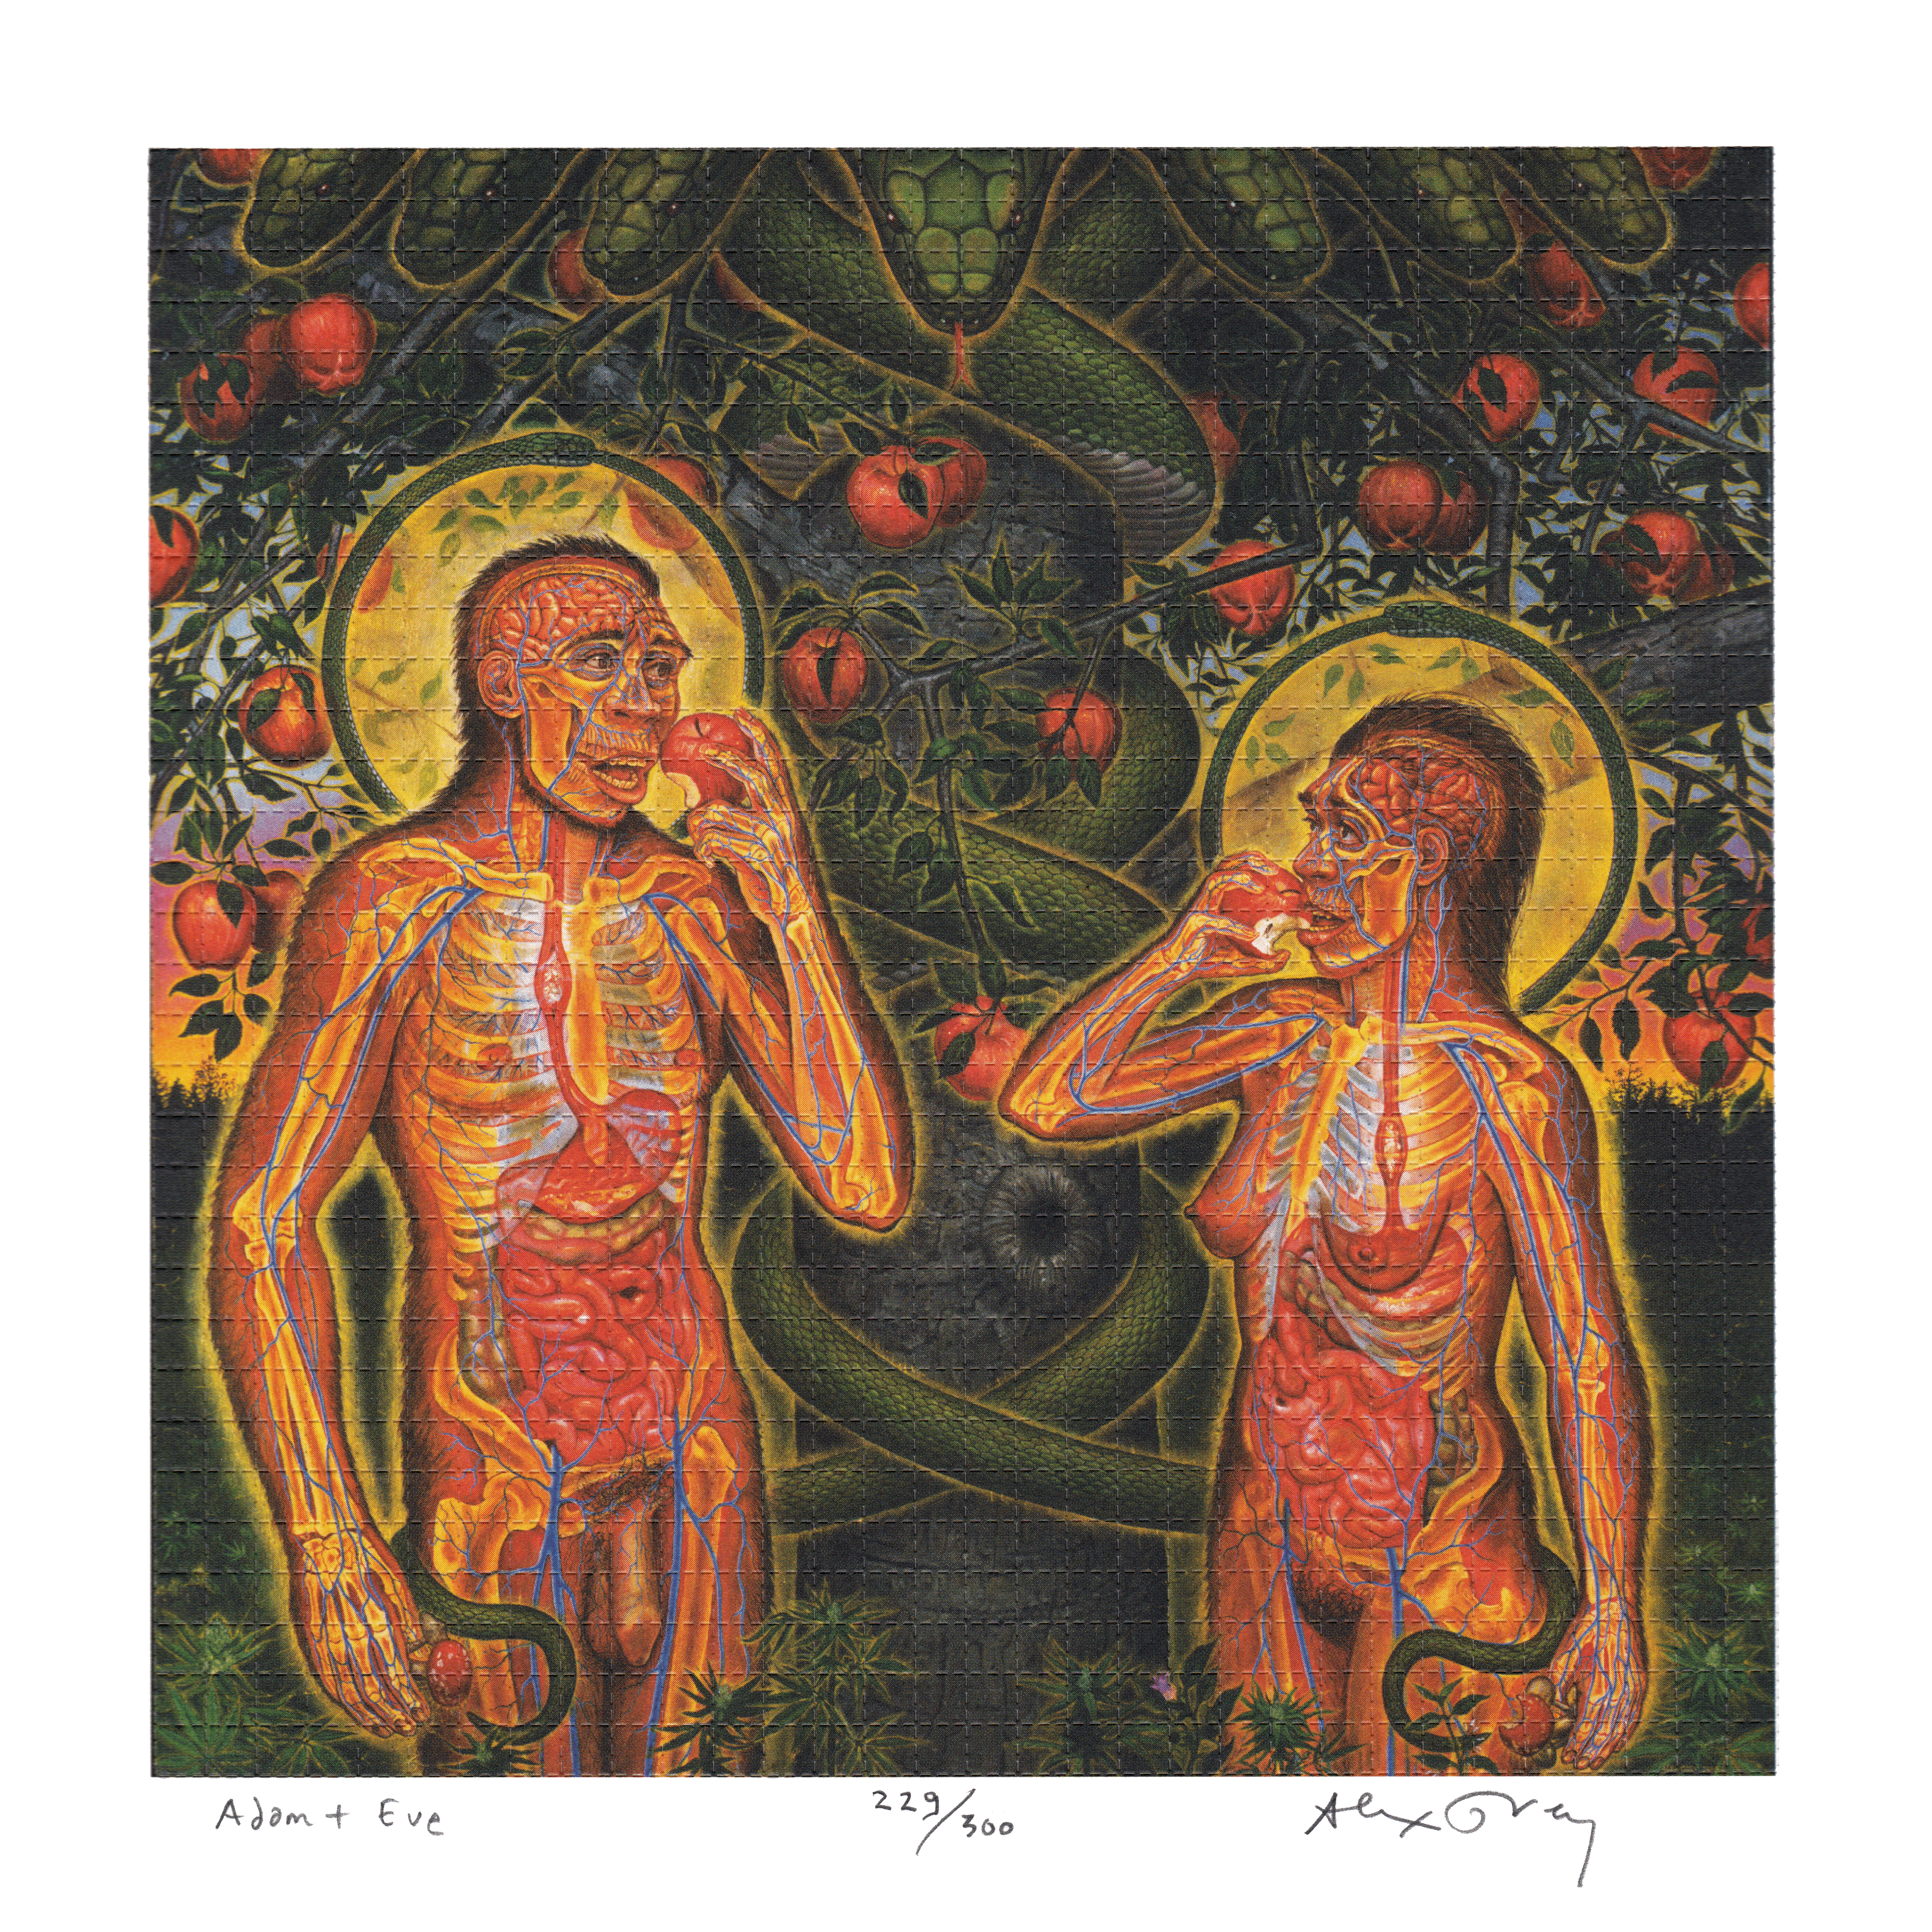 Adam & Eve by Alex Grey as LSD Blotter Art #229/300